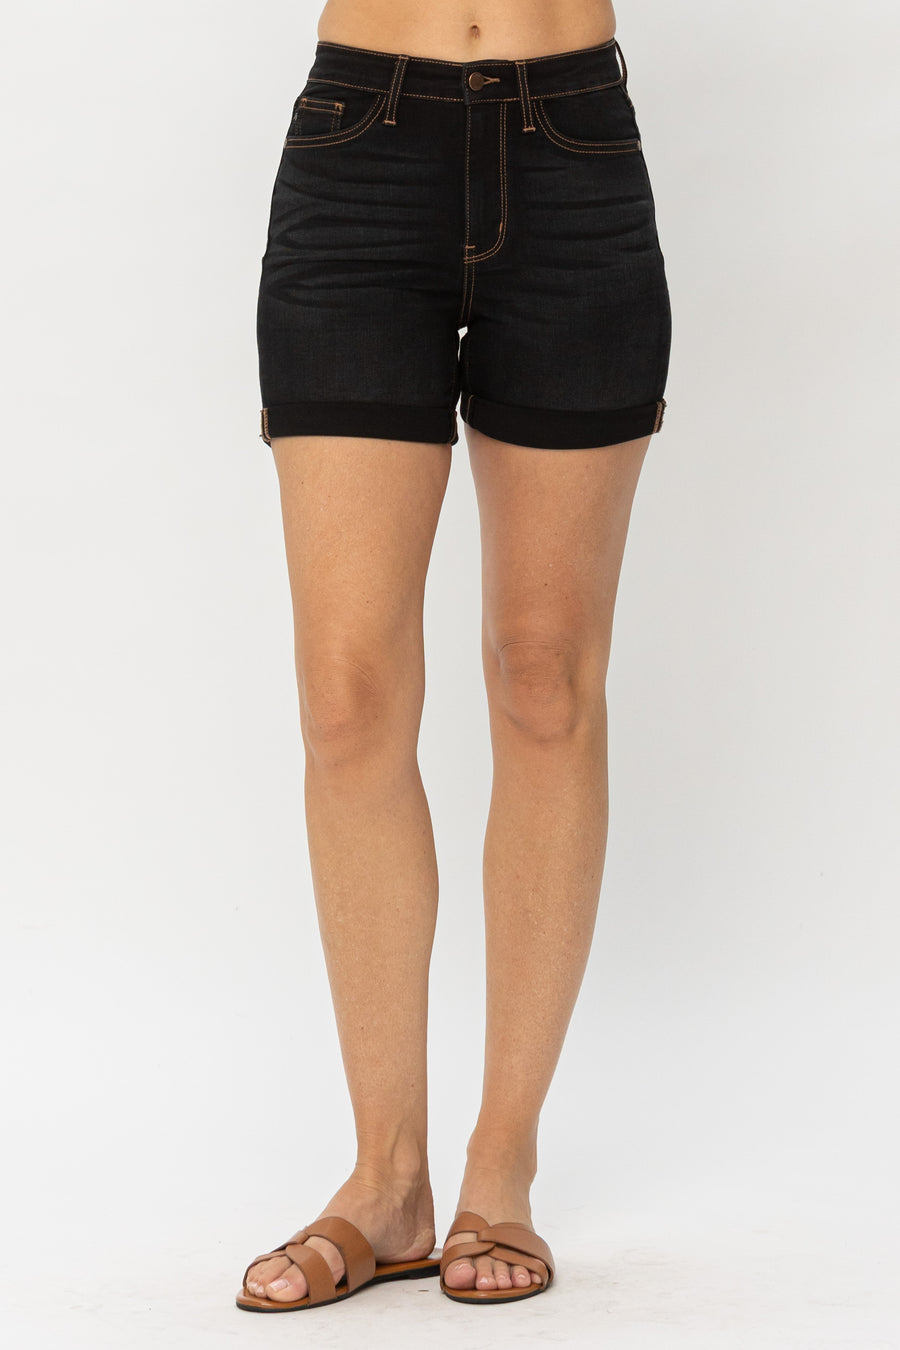 Ciara 3D Whisker Brown Thread Shorts